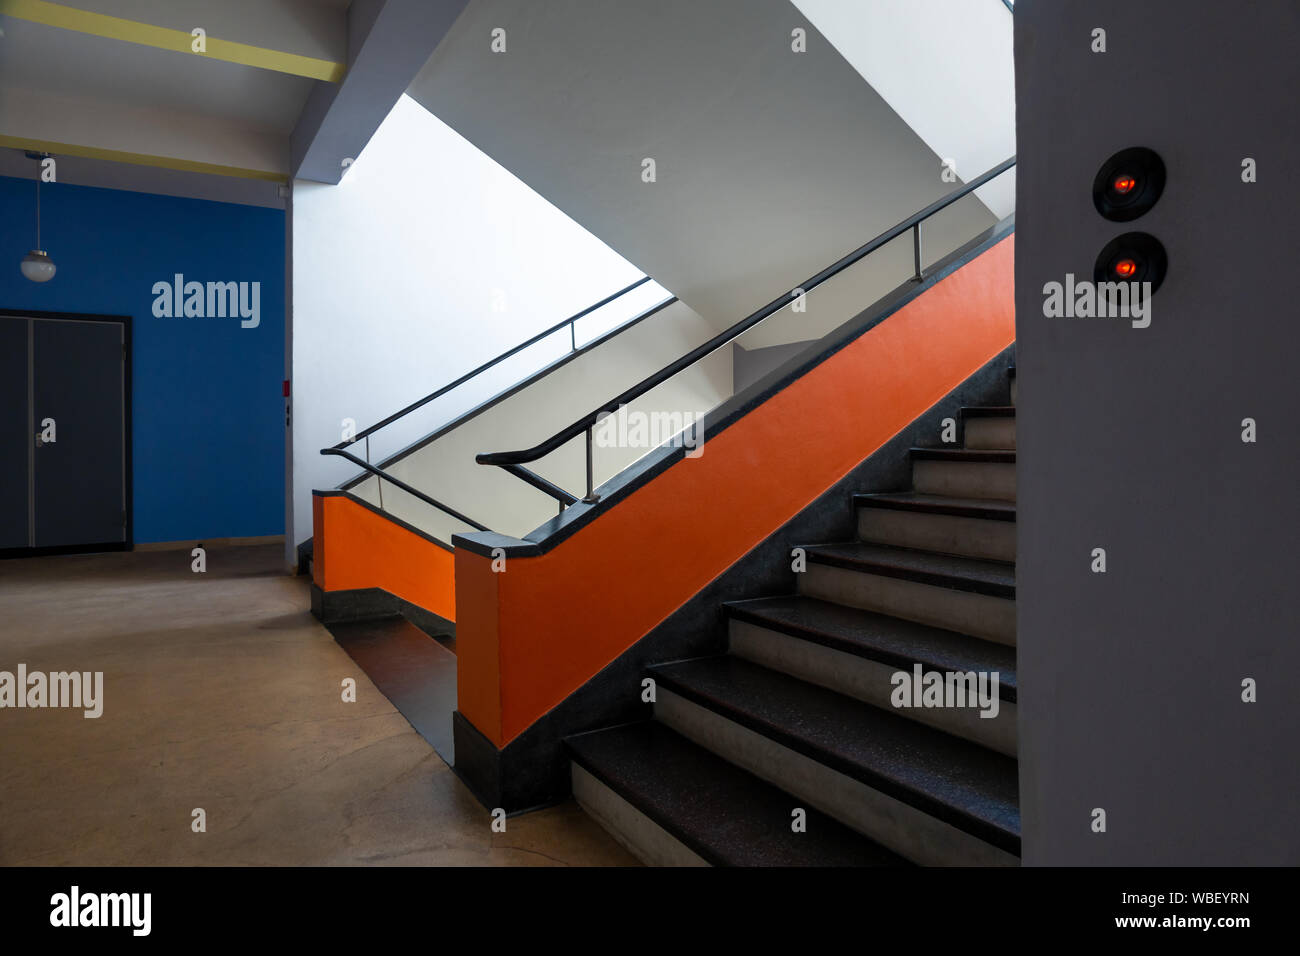 Bauhaus Dessau Interieur. Treppen Treppe im Bauhaus Dessau Deutschland. Von Walter Gropius entworfen. Restauriert ursprünglichen Farben. Stockfoto